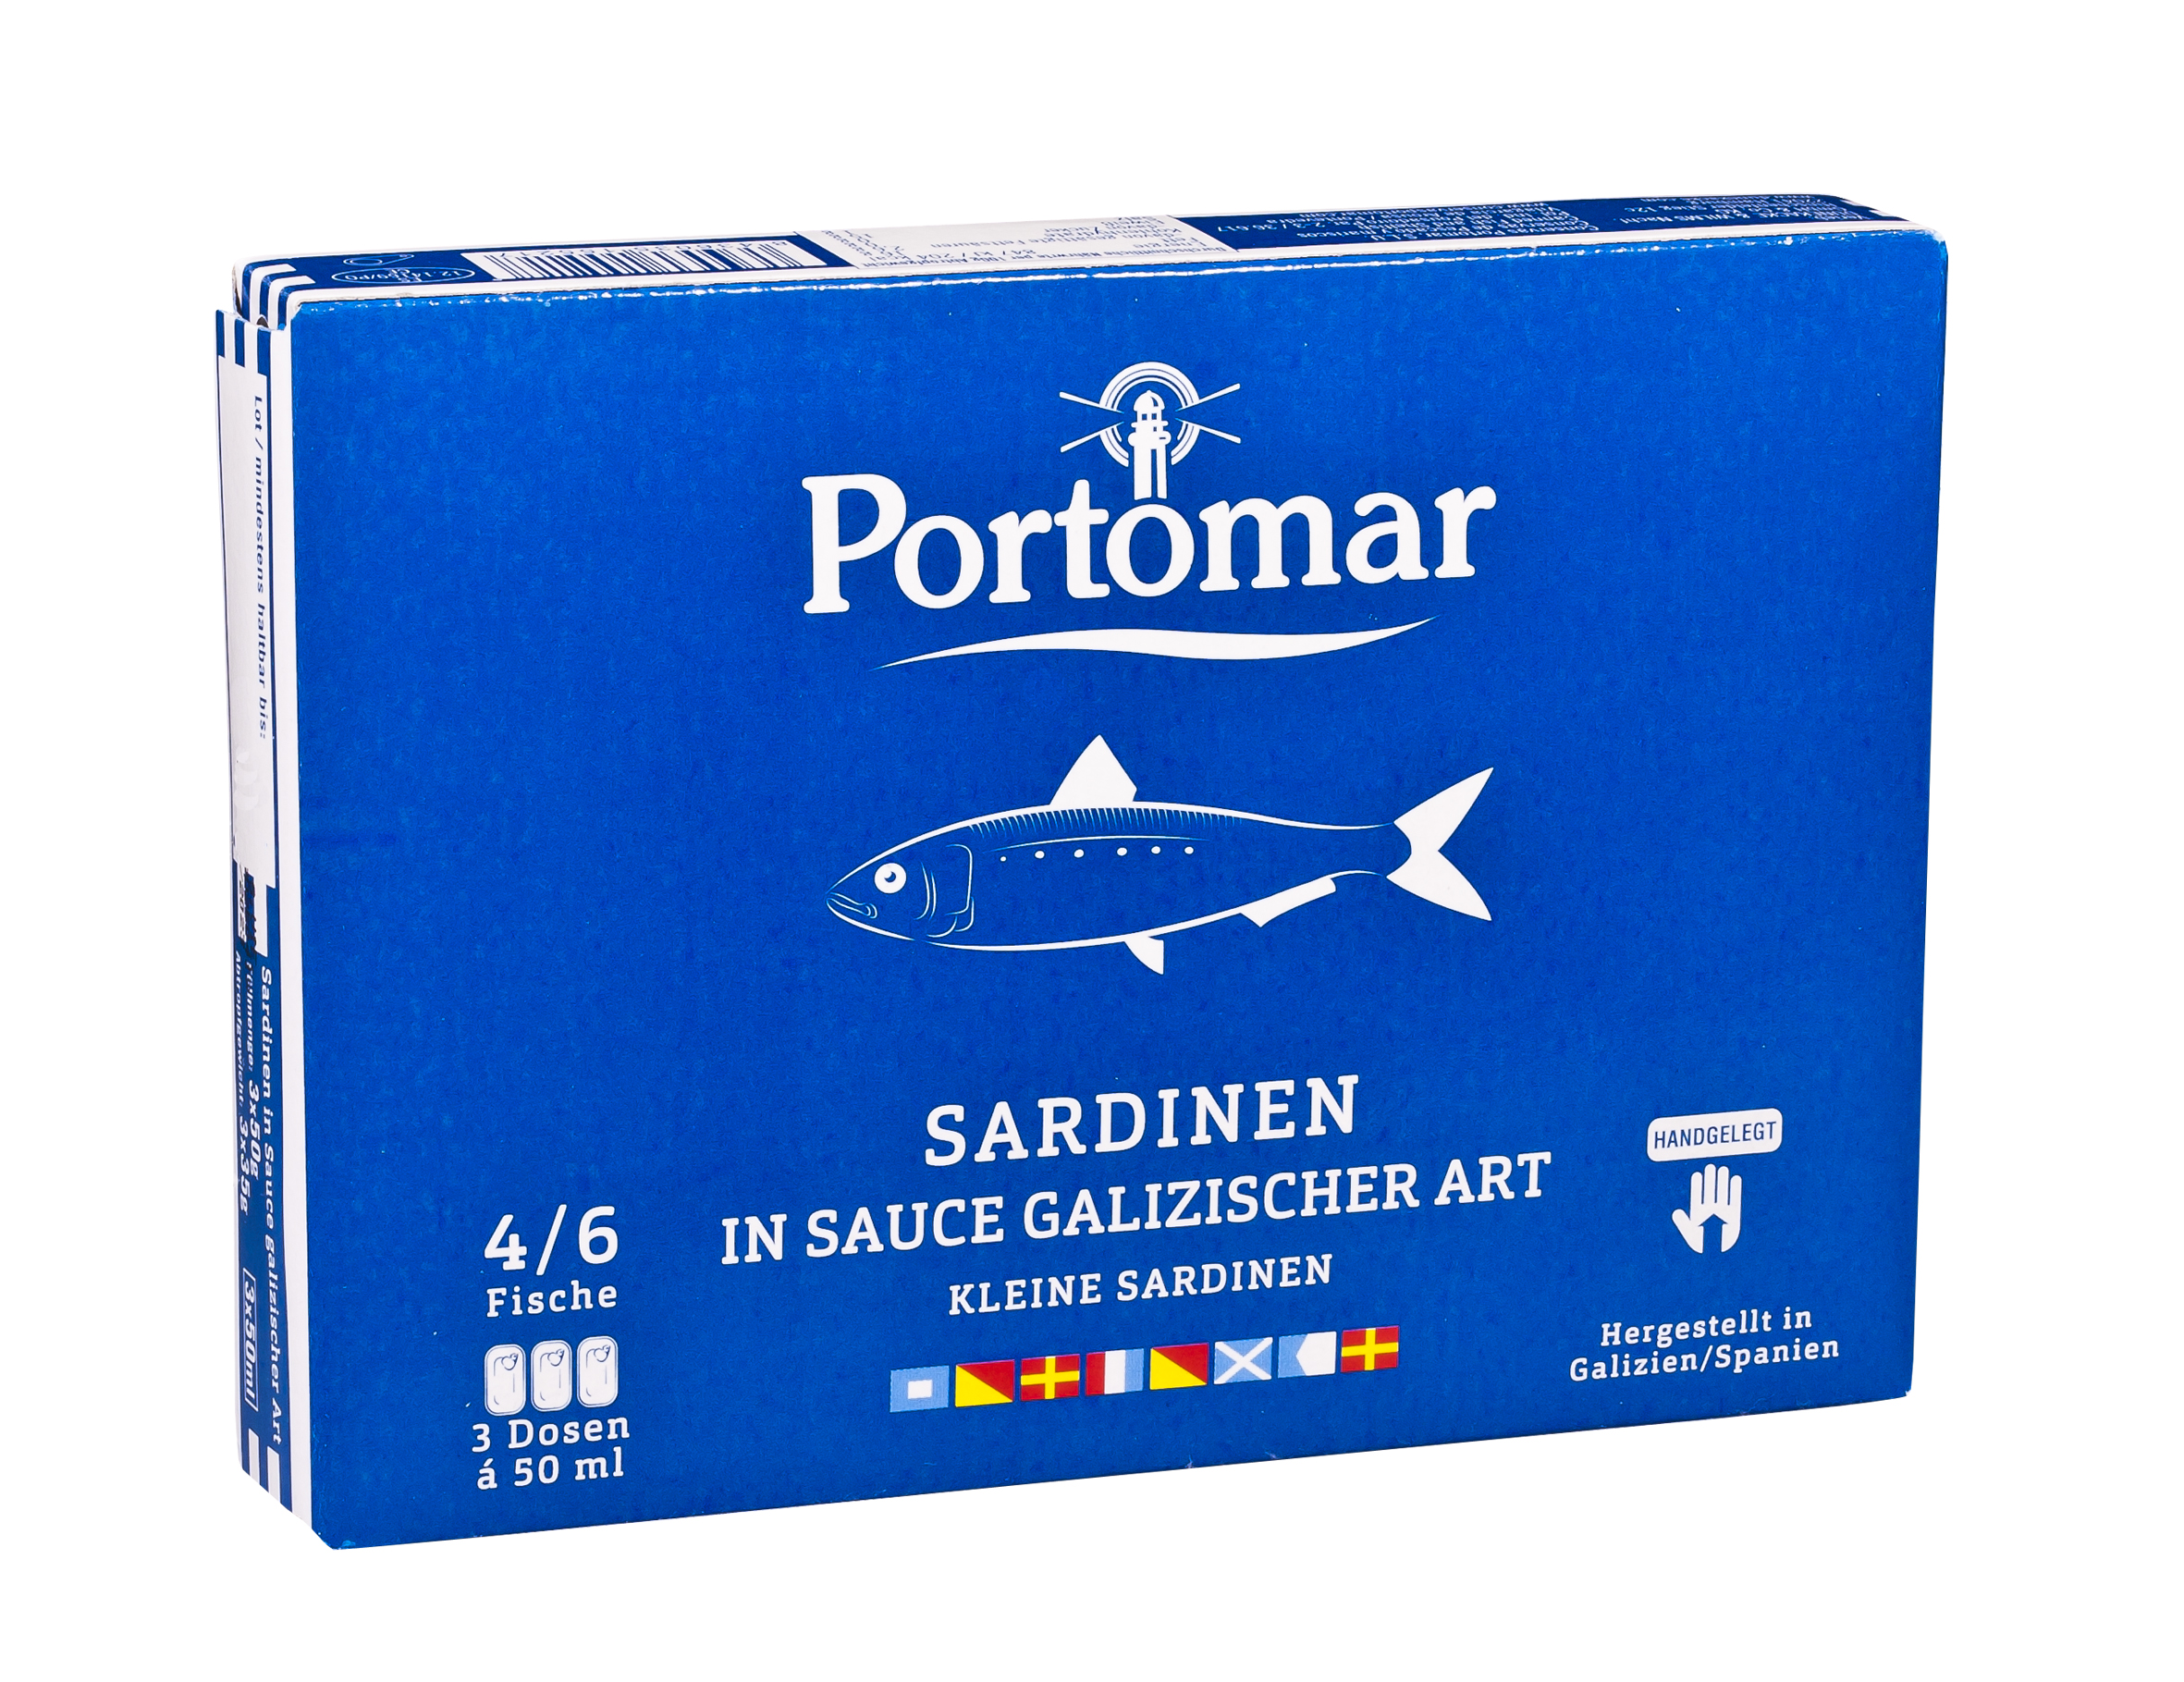 Kleine Sardinen in galizischer Sauce mit Oliven Öl mit Haut und mit Gräten (plain), 3 x 50g